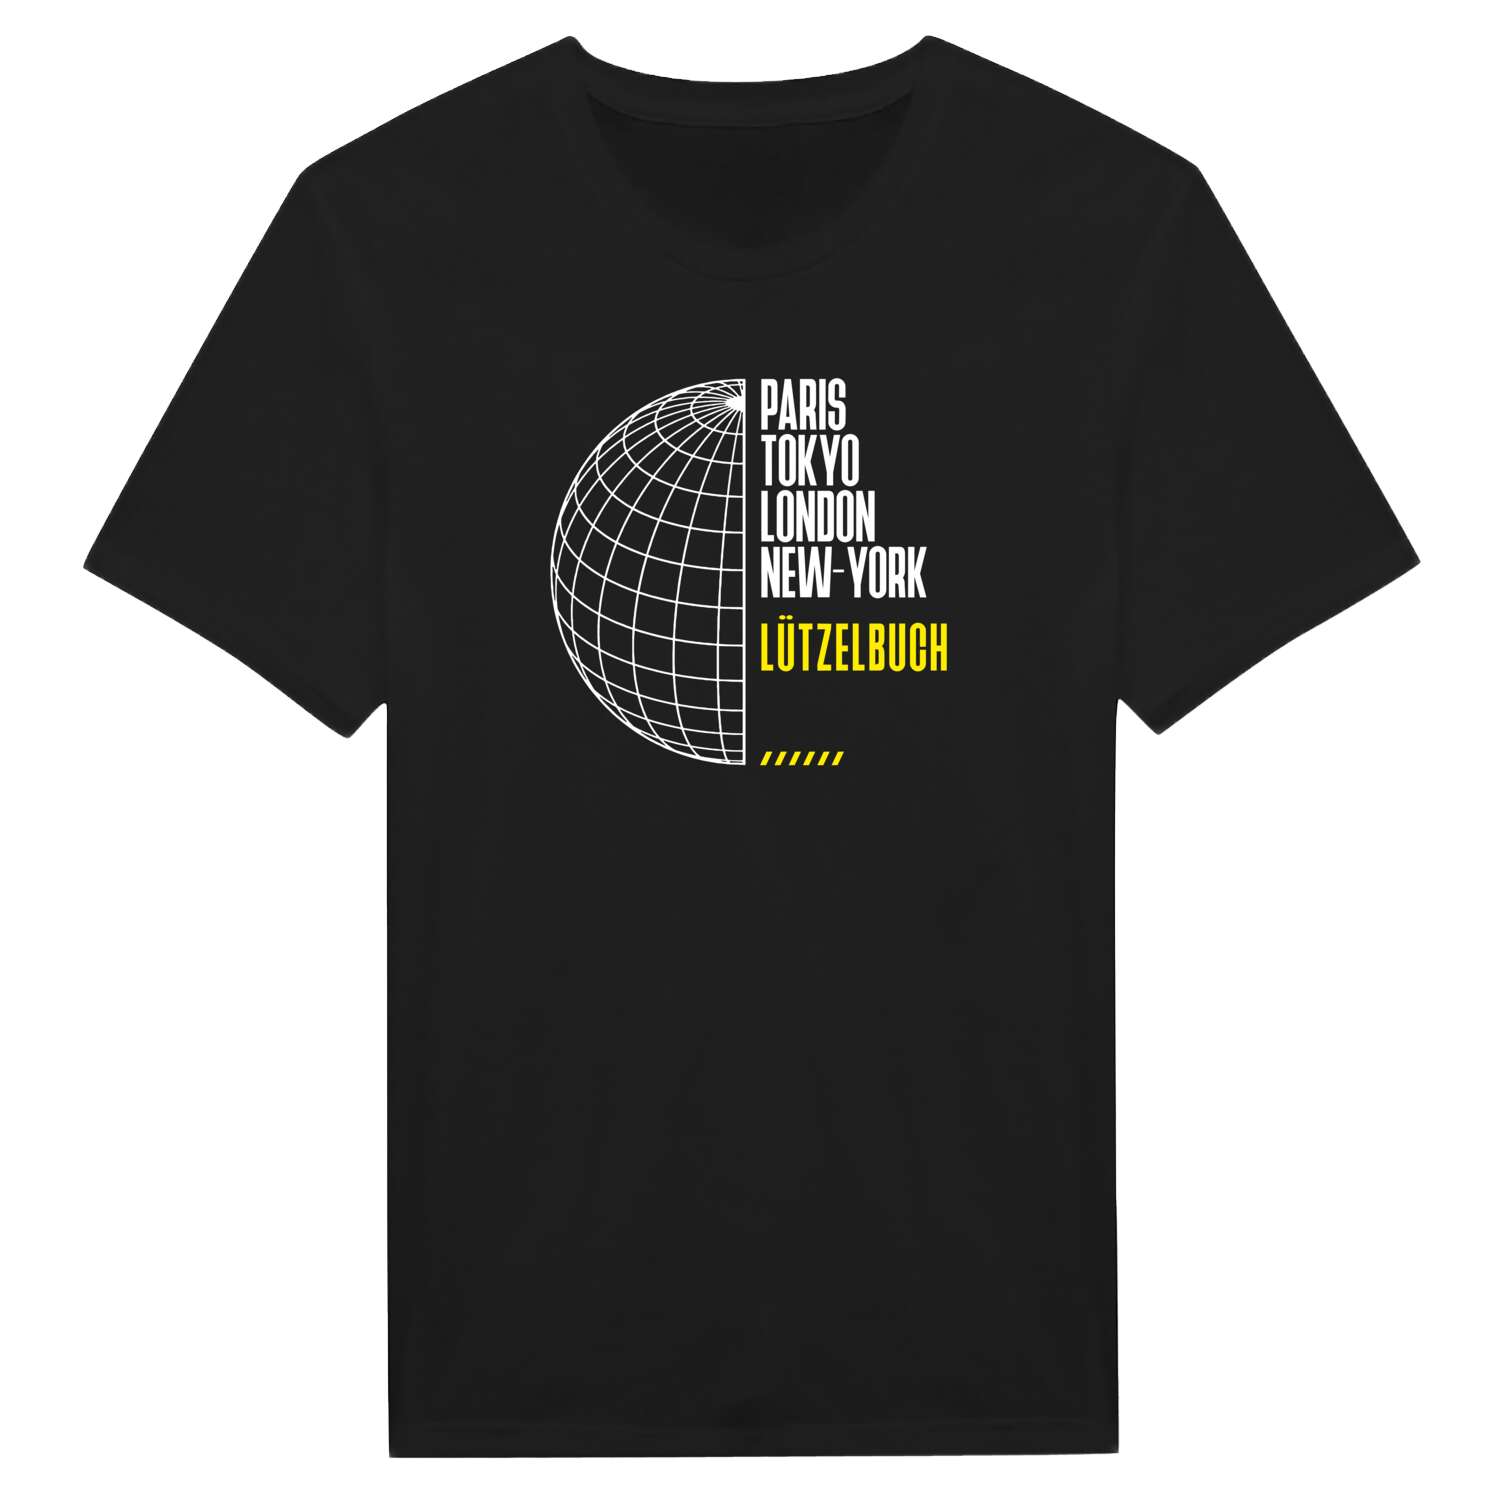 Lützelbuch T-Shirt »Paris Tokyo London«